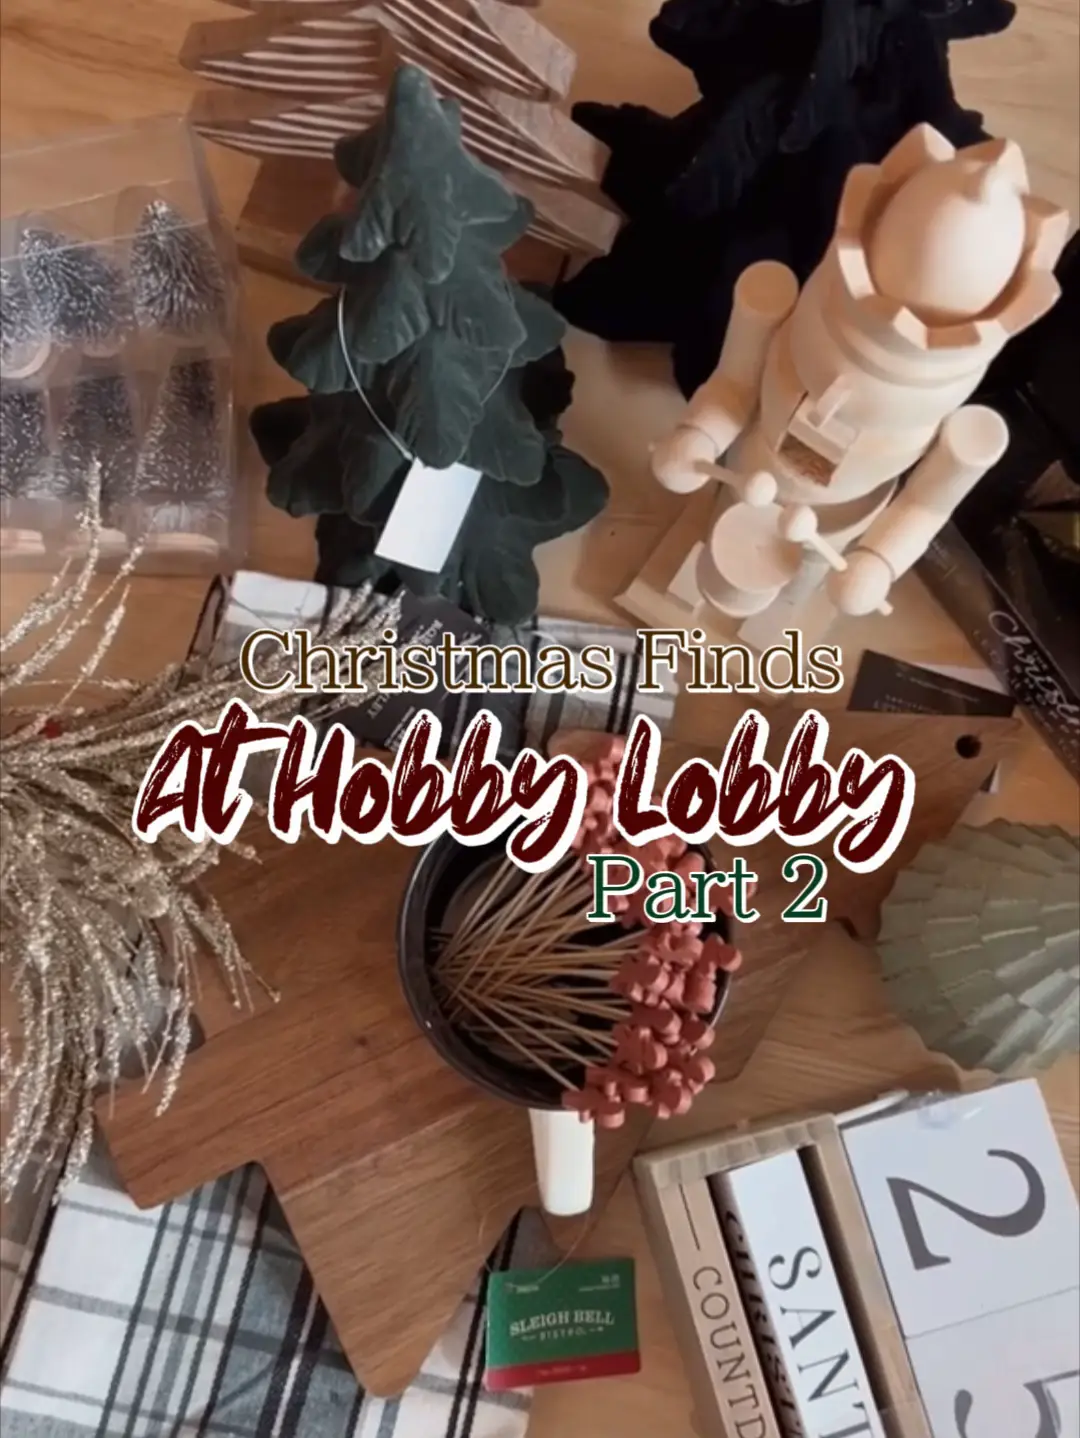 Hello Kitty Play Pack, Hobby Lobby